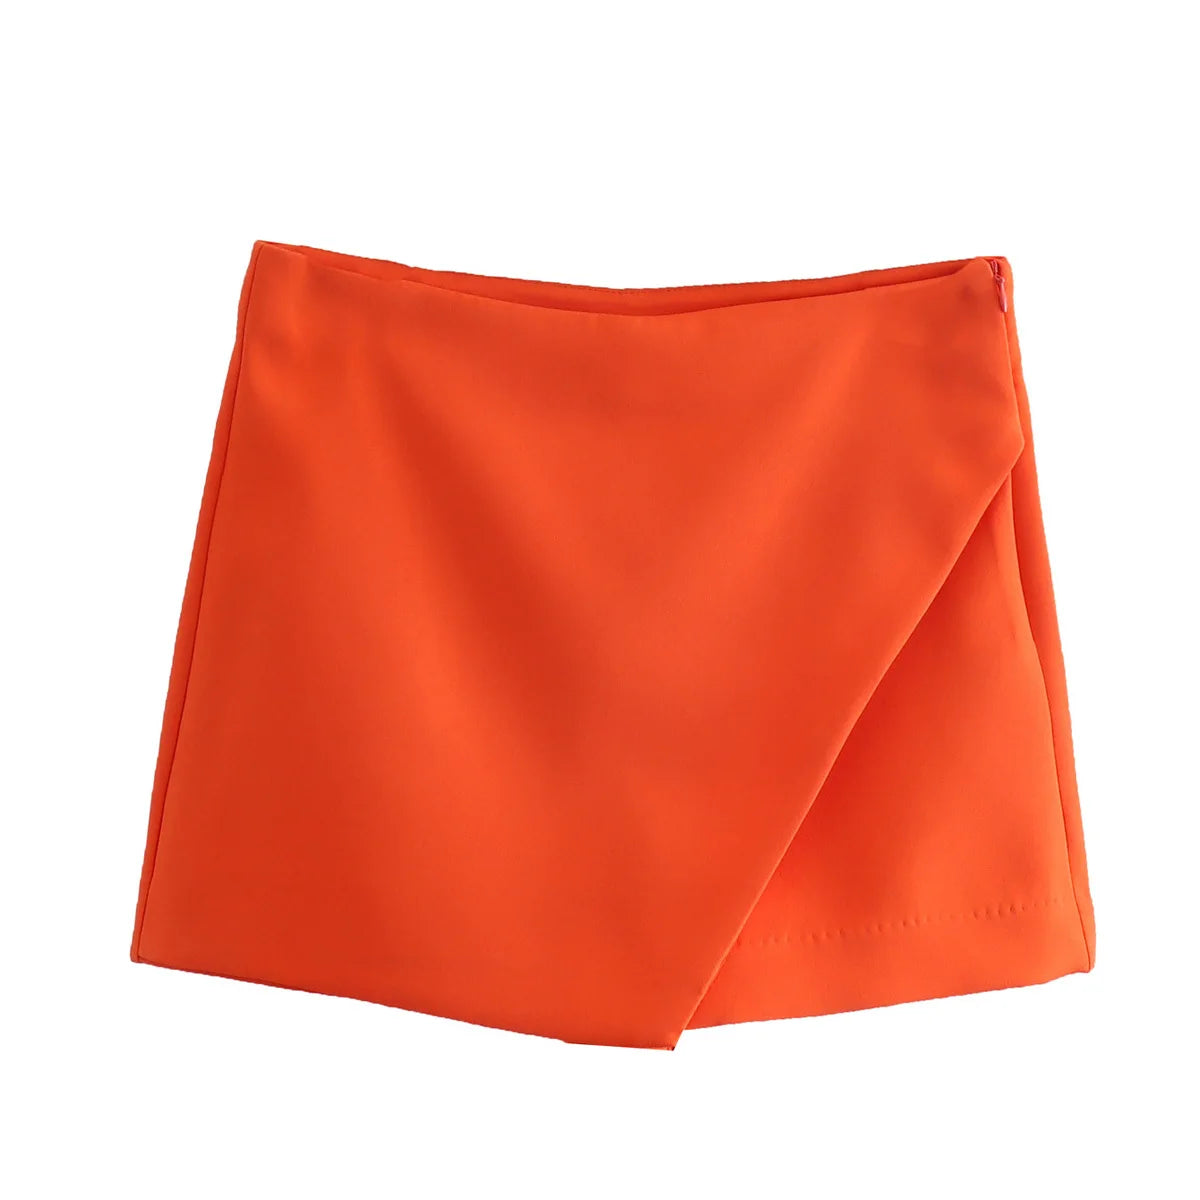 Short Skort high Waisted Dreamofthe90s Skirt